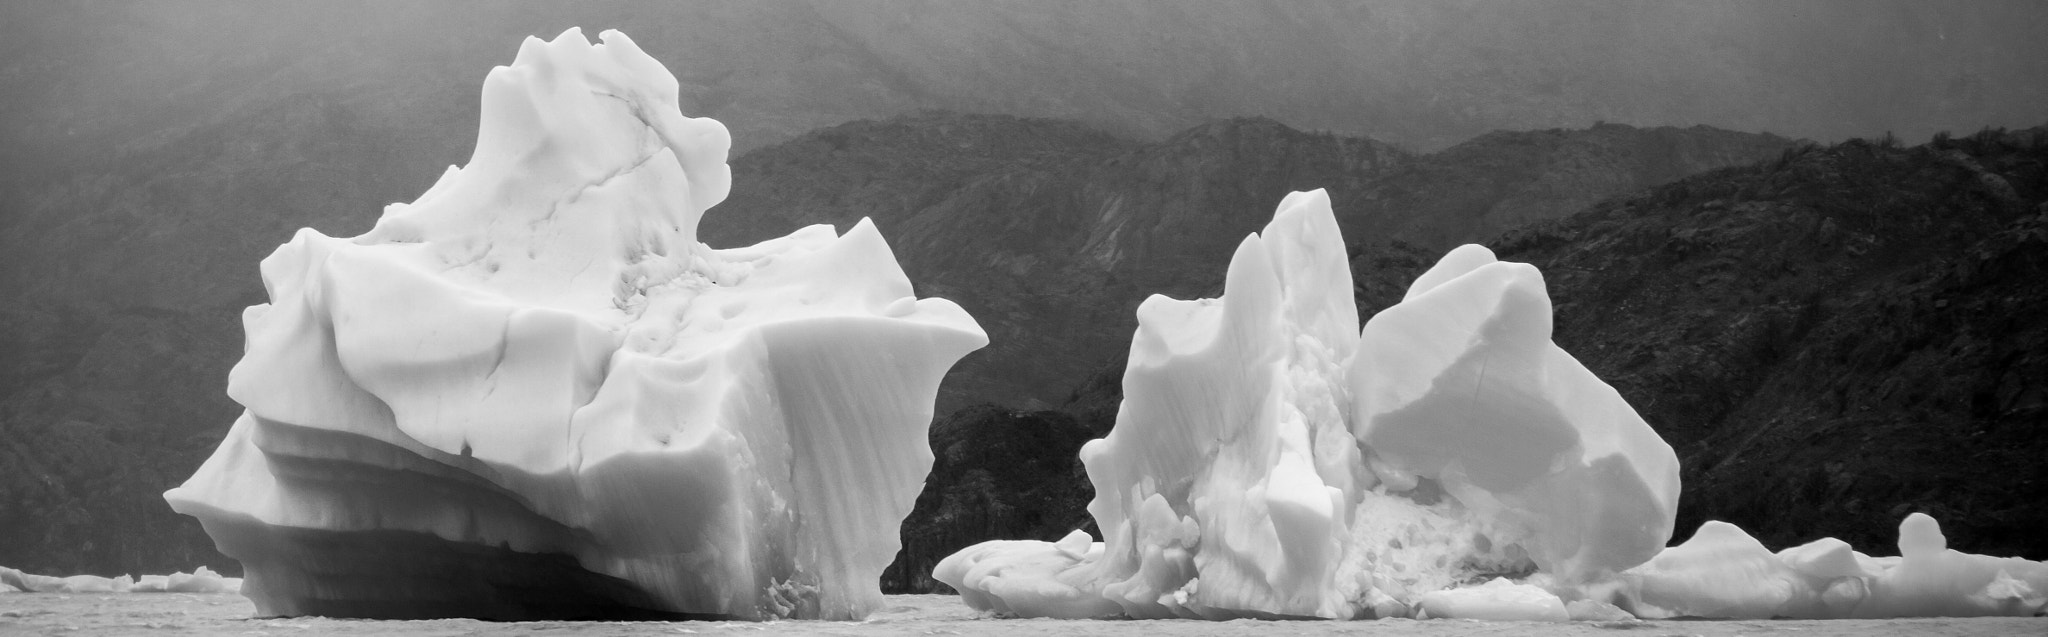 Canon EOS 50D sample photo. Glaciar lago gray photography